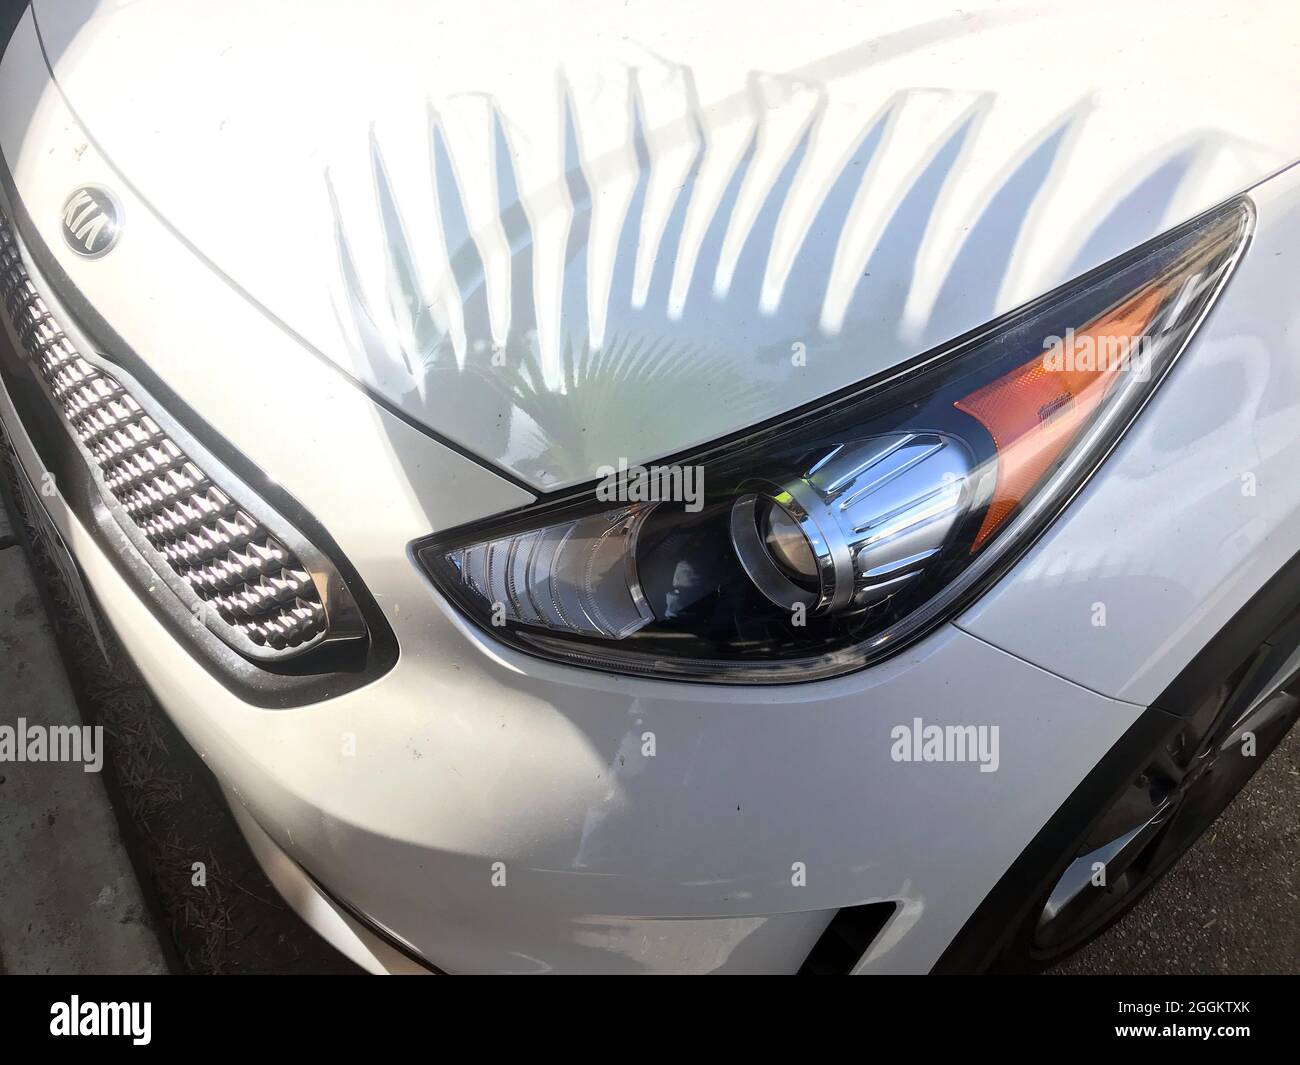 Geparktes Auto mit dem Schatten einer Palme, die an eine Wimpern auf dem Scheinwerfer erinnert. Stockfoto